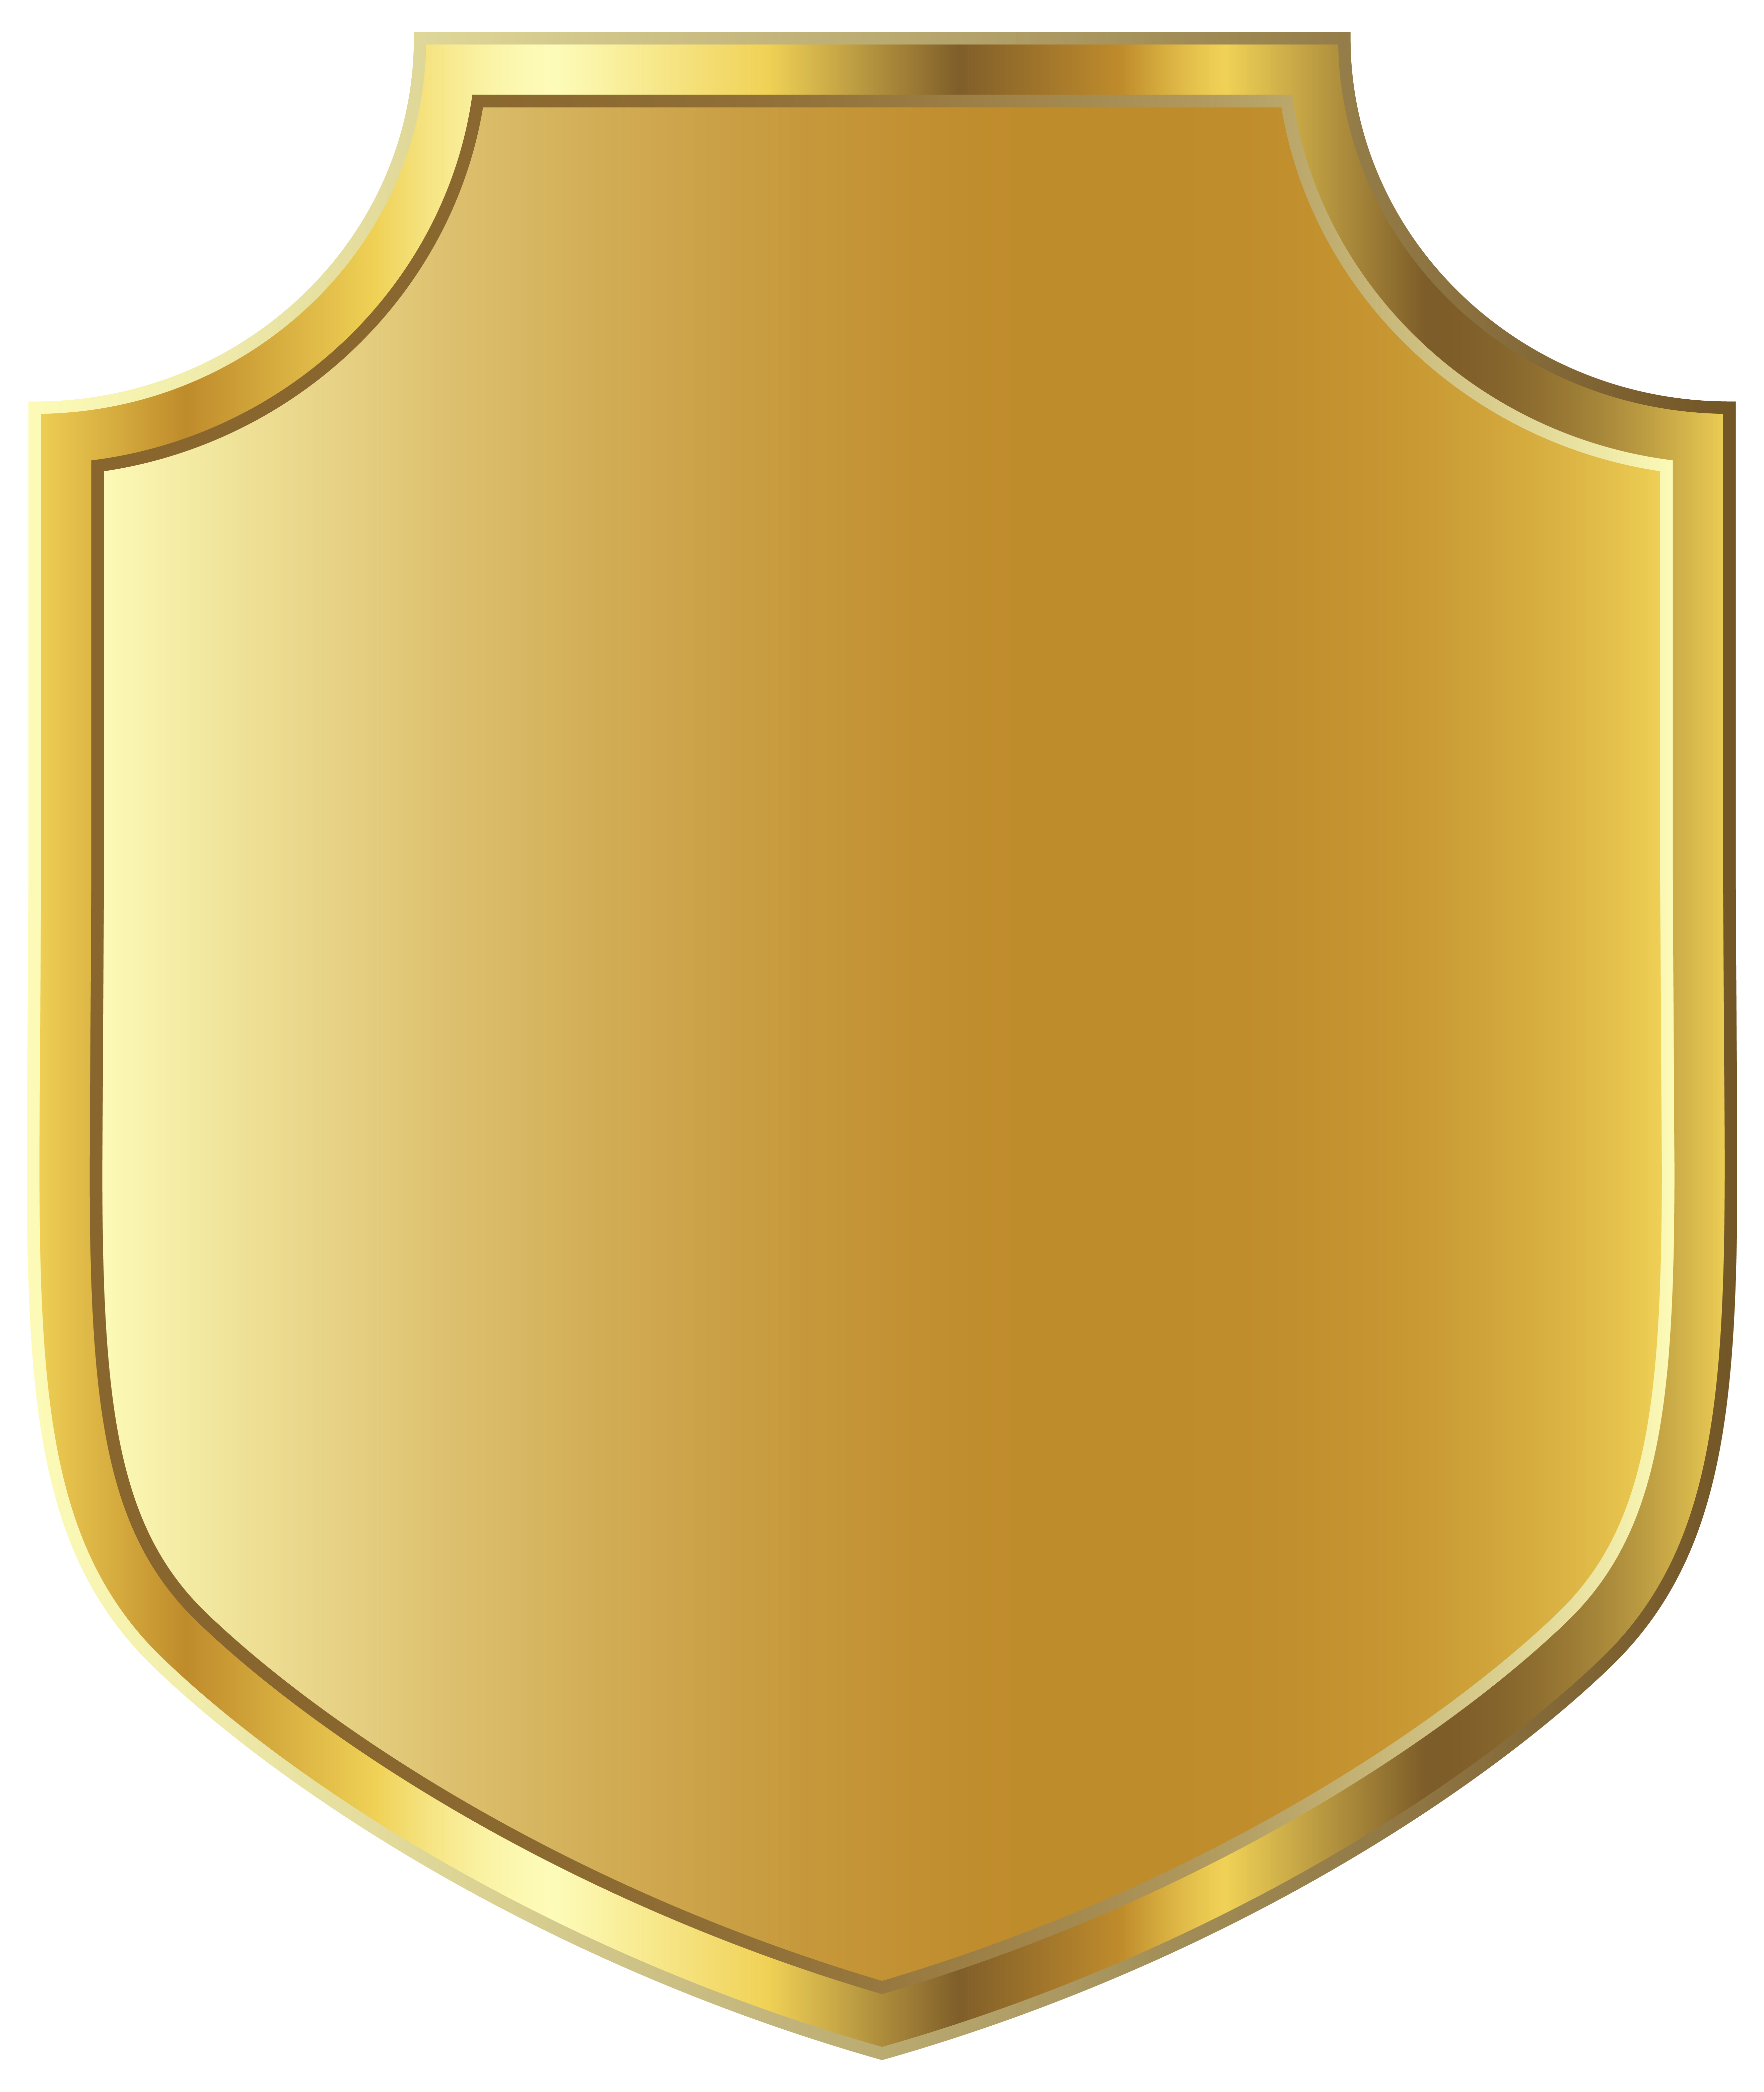 Fondo de imagen PNG de la insignia del escudo